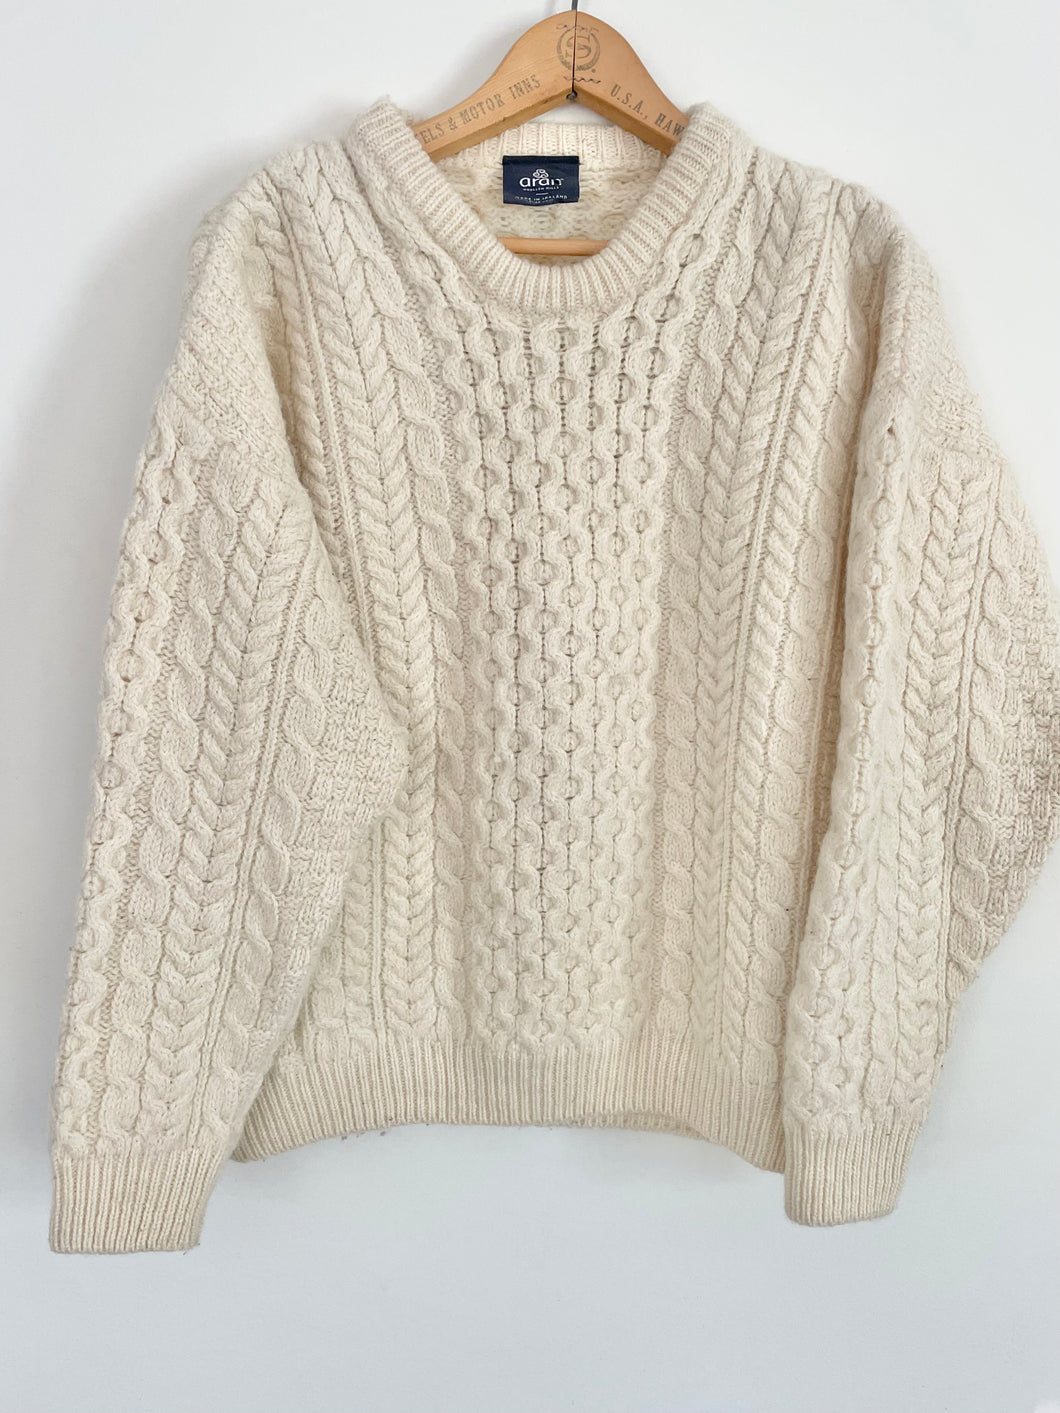 irish knit sweater from aran mills